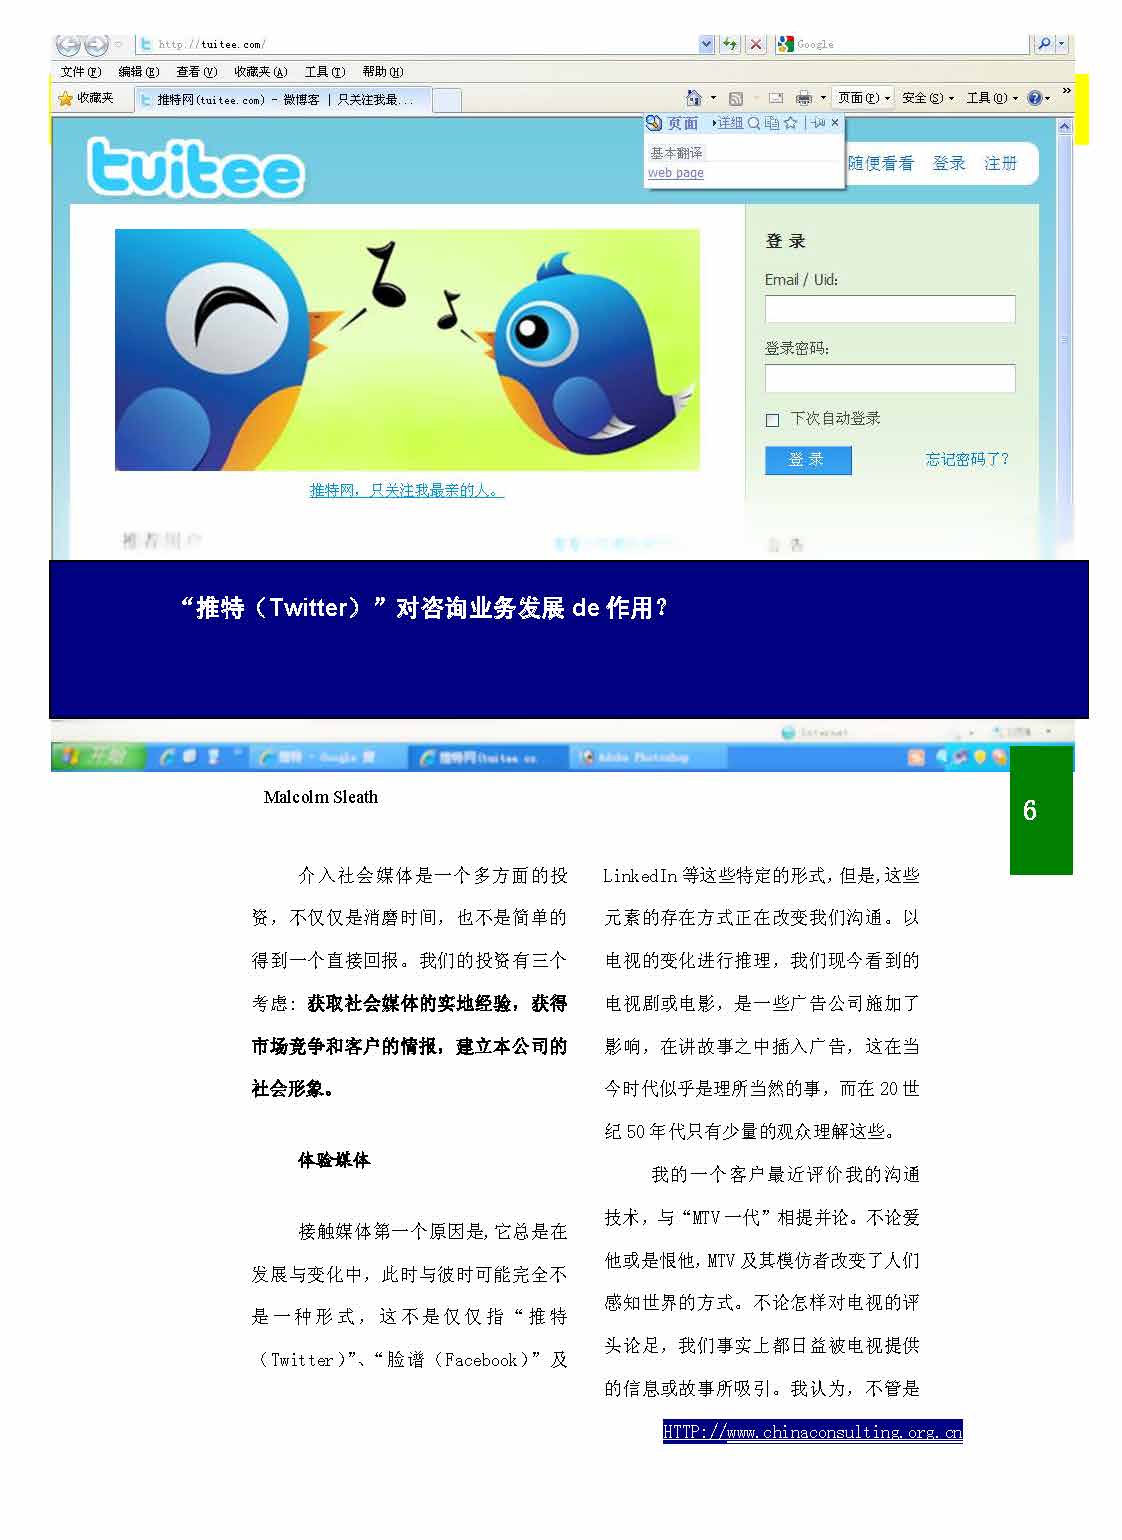 8中国科技咨询协会第八期会刊_页面_08.jpg